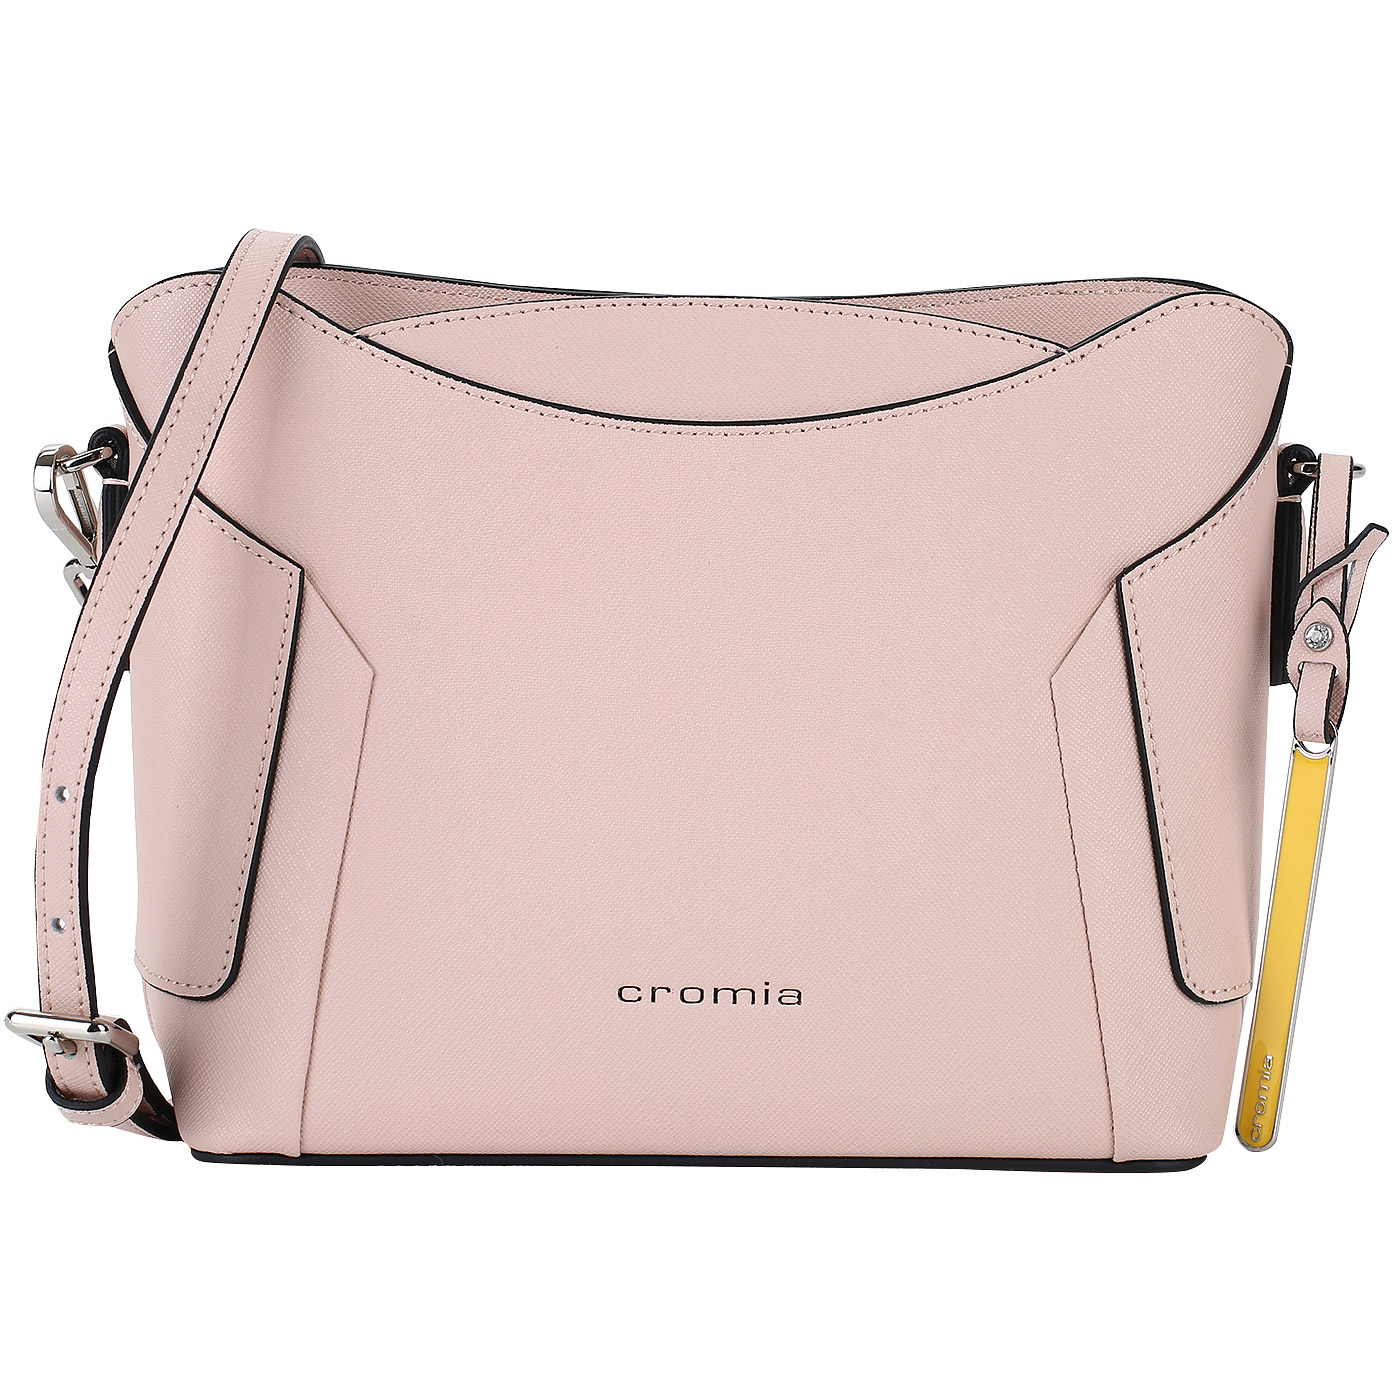 Cromia Аккуратная сумочка из розового сафьяна